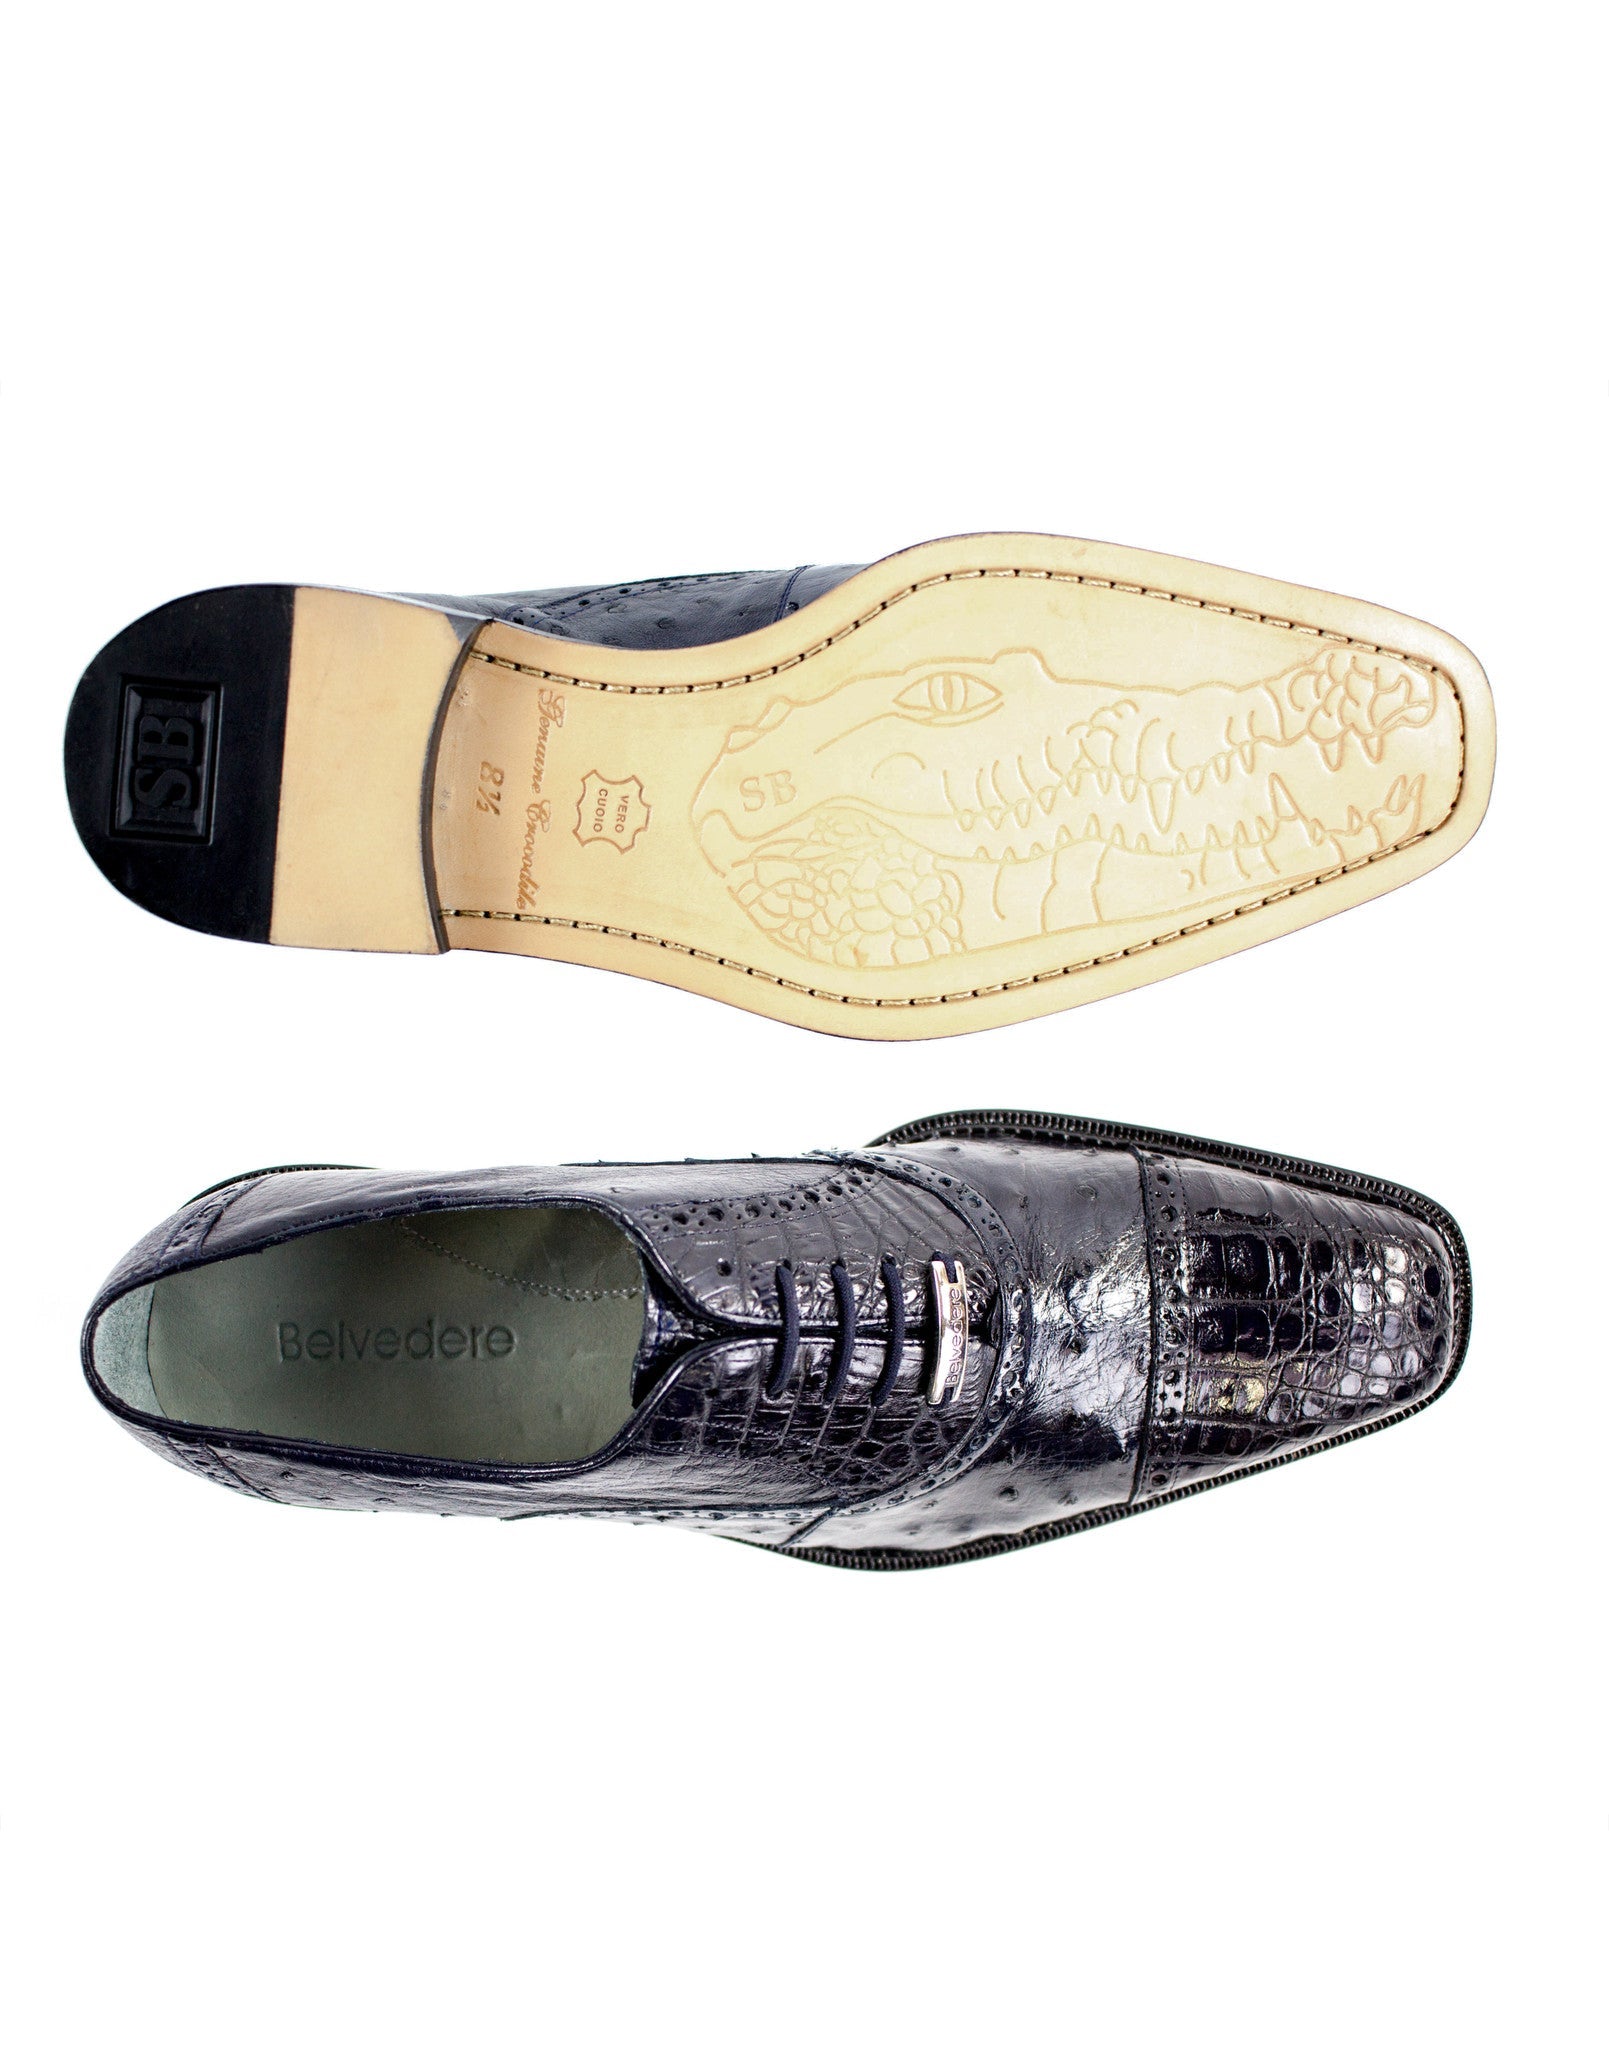 Belvedere Shoes Onesto II - Navy